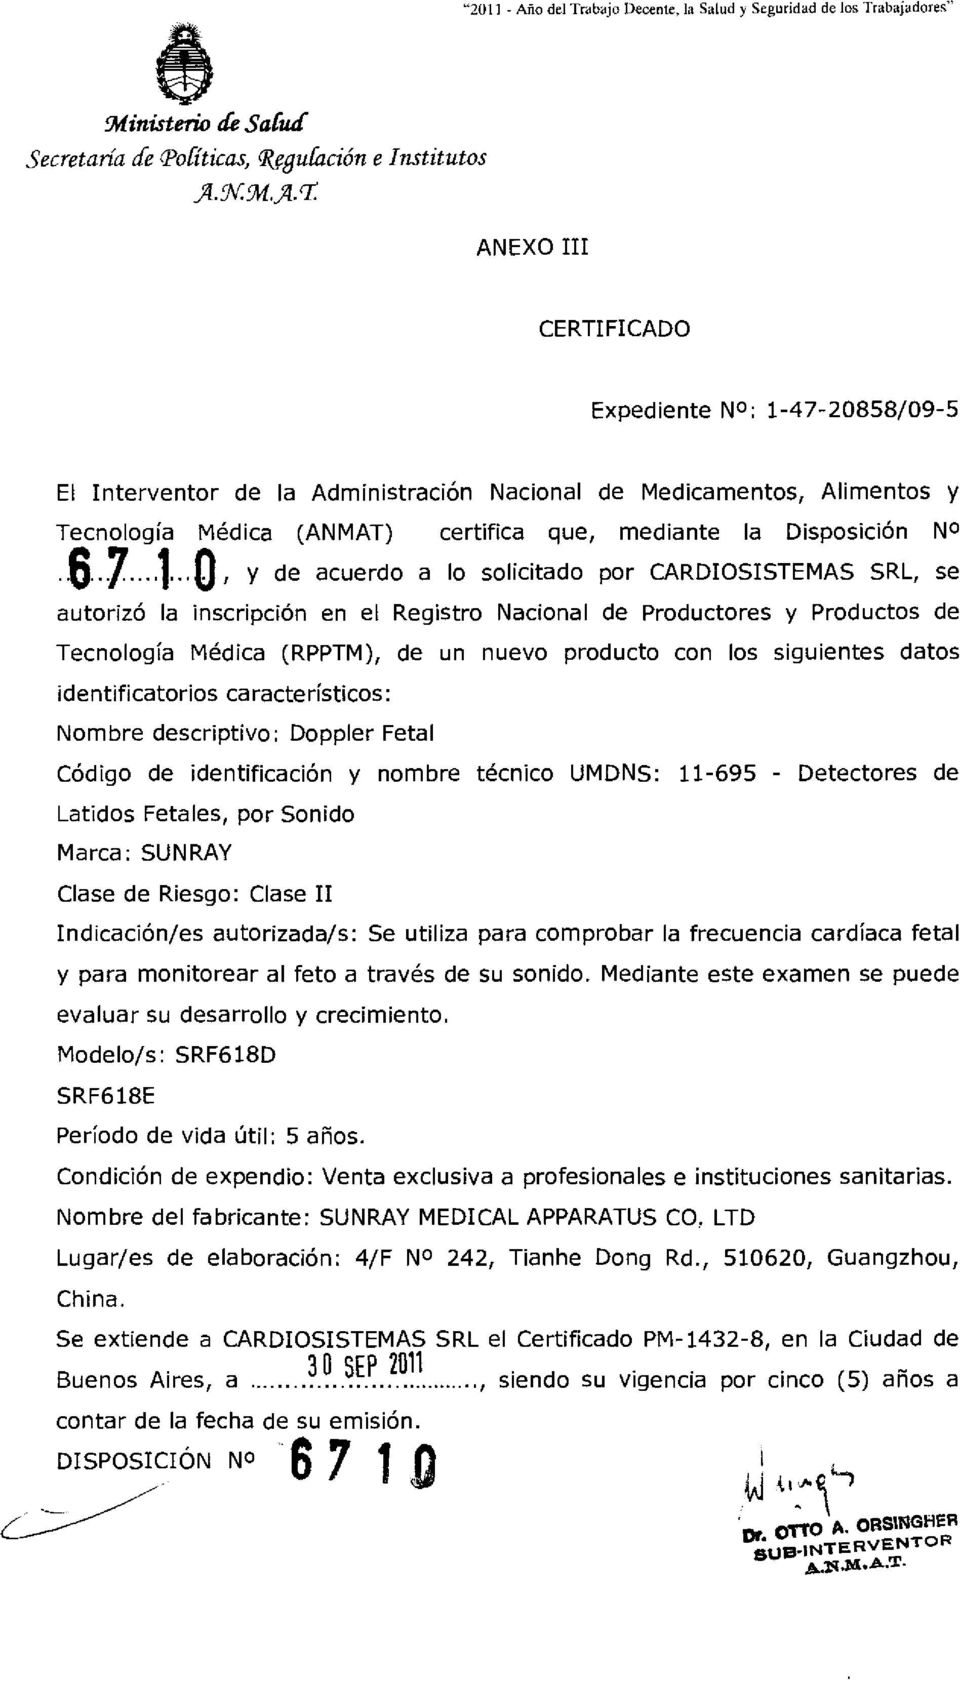 rr: ANEXO III CERTIFICADO Expediente NO: 1-47-20858/09-5 El Interventor de la Administración Nacional de Medicamentos, Alimentos y Tecnología Médica (ANMAT) certifica que, mediante la Disposición NO.